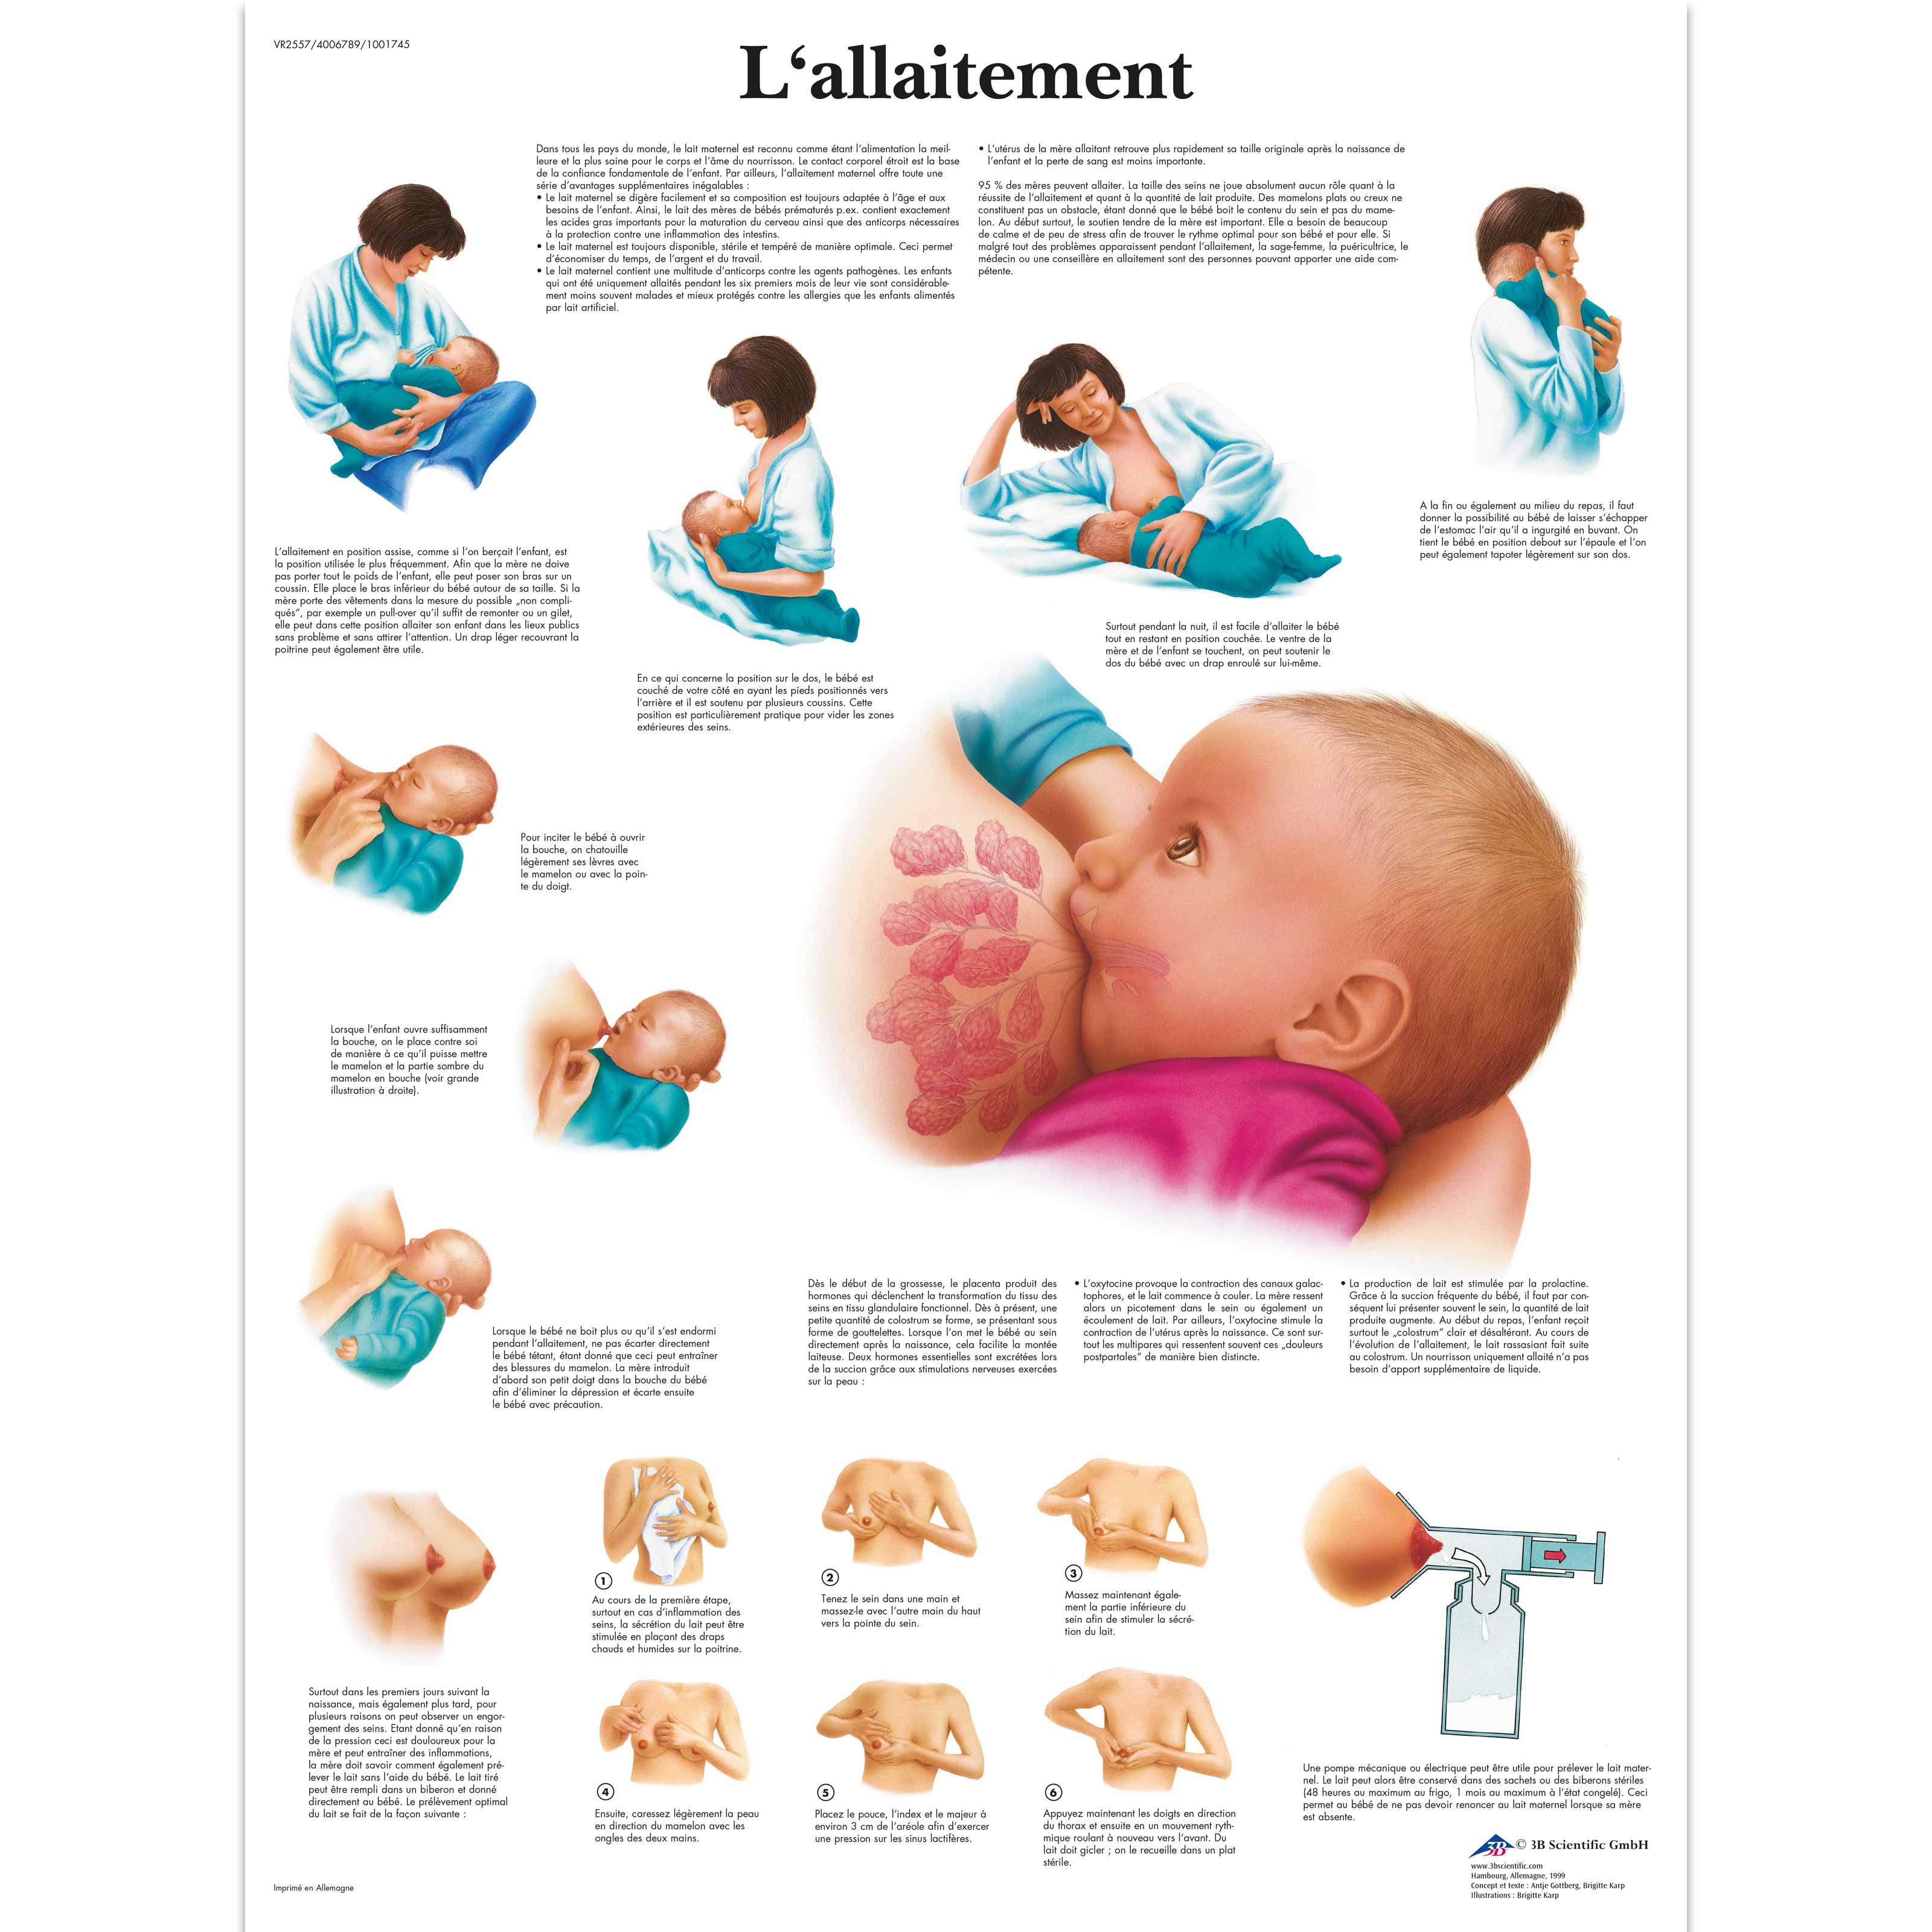 L'allaitement - 1001745 - VR2557L - Pregnancy and Childbirth - 3B Scientific